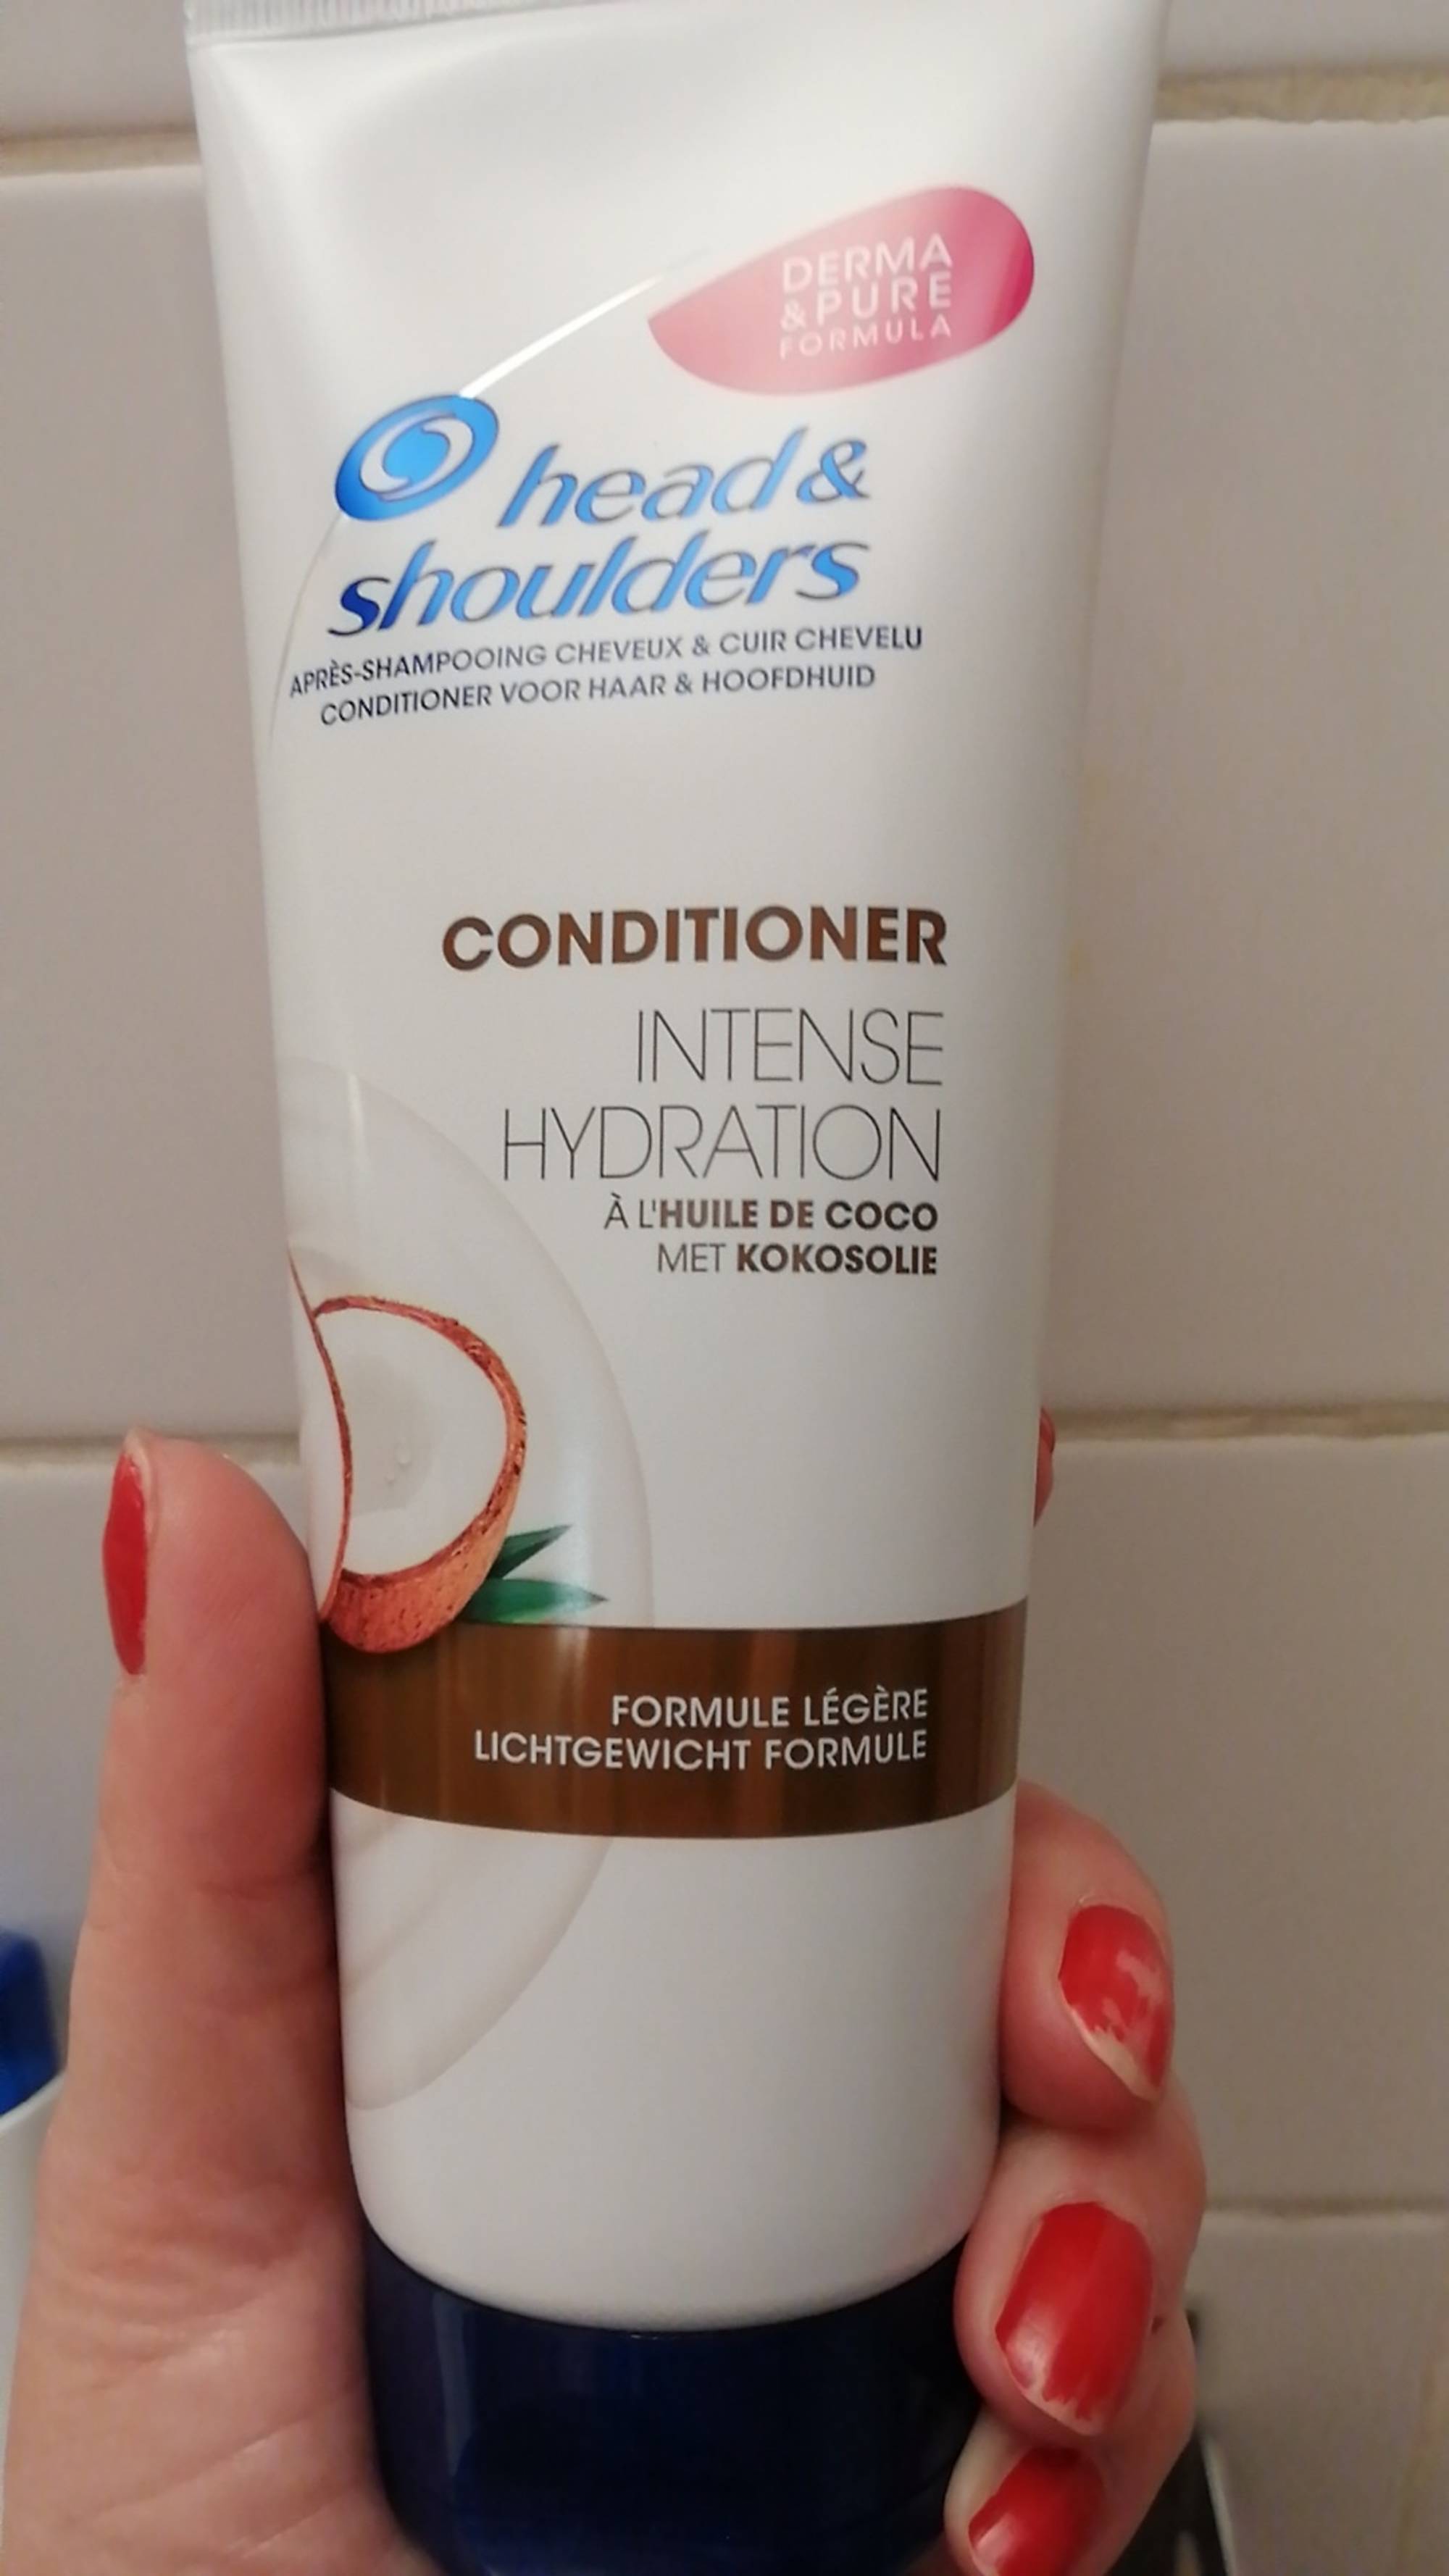 HEAD & SHOULDERS - Après-shampooing cheveux & cuir chevelu à l'huile de coco